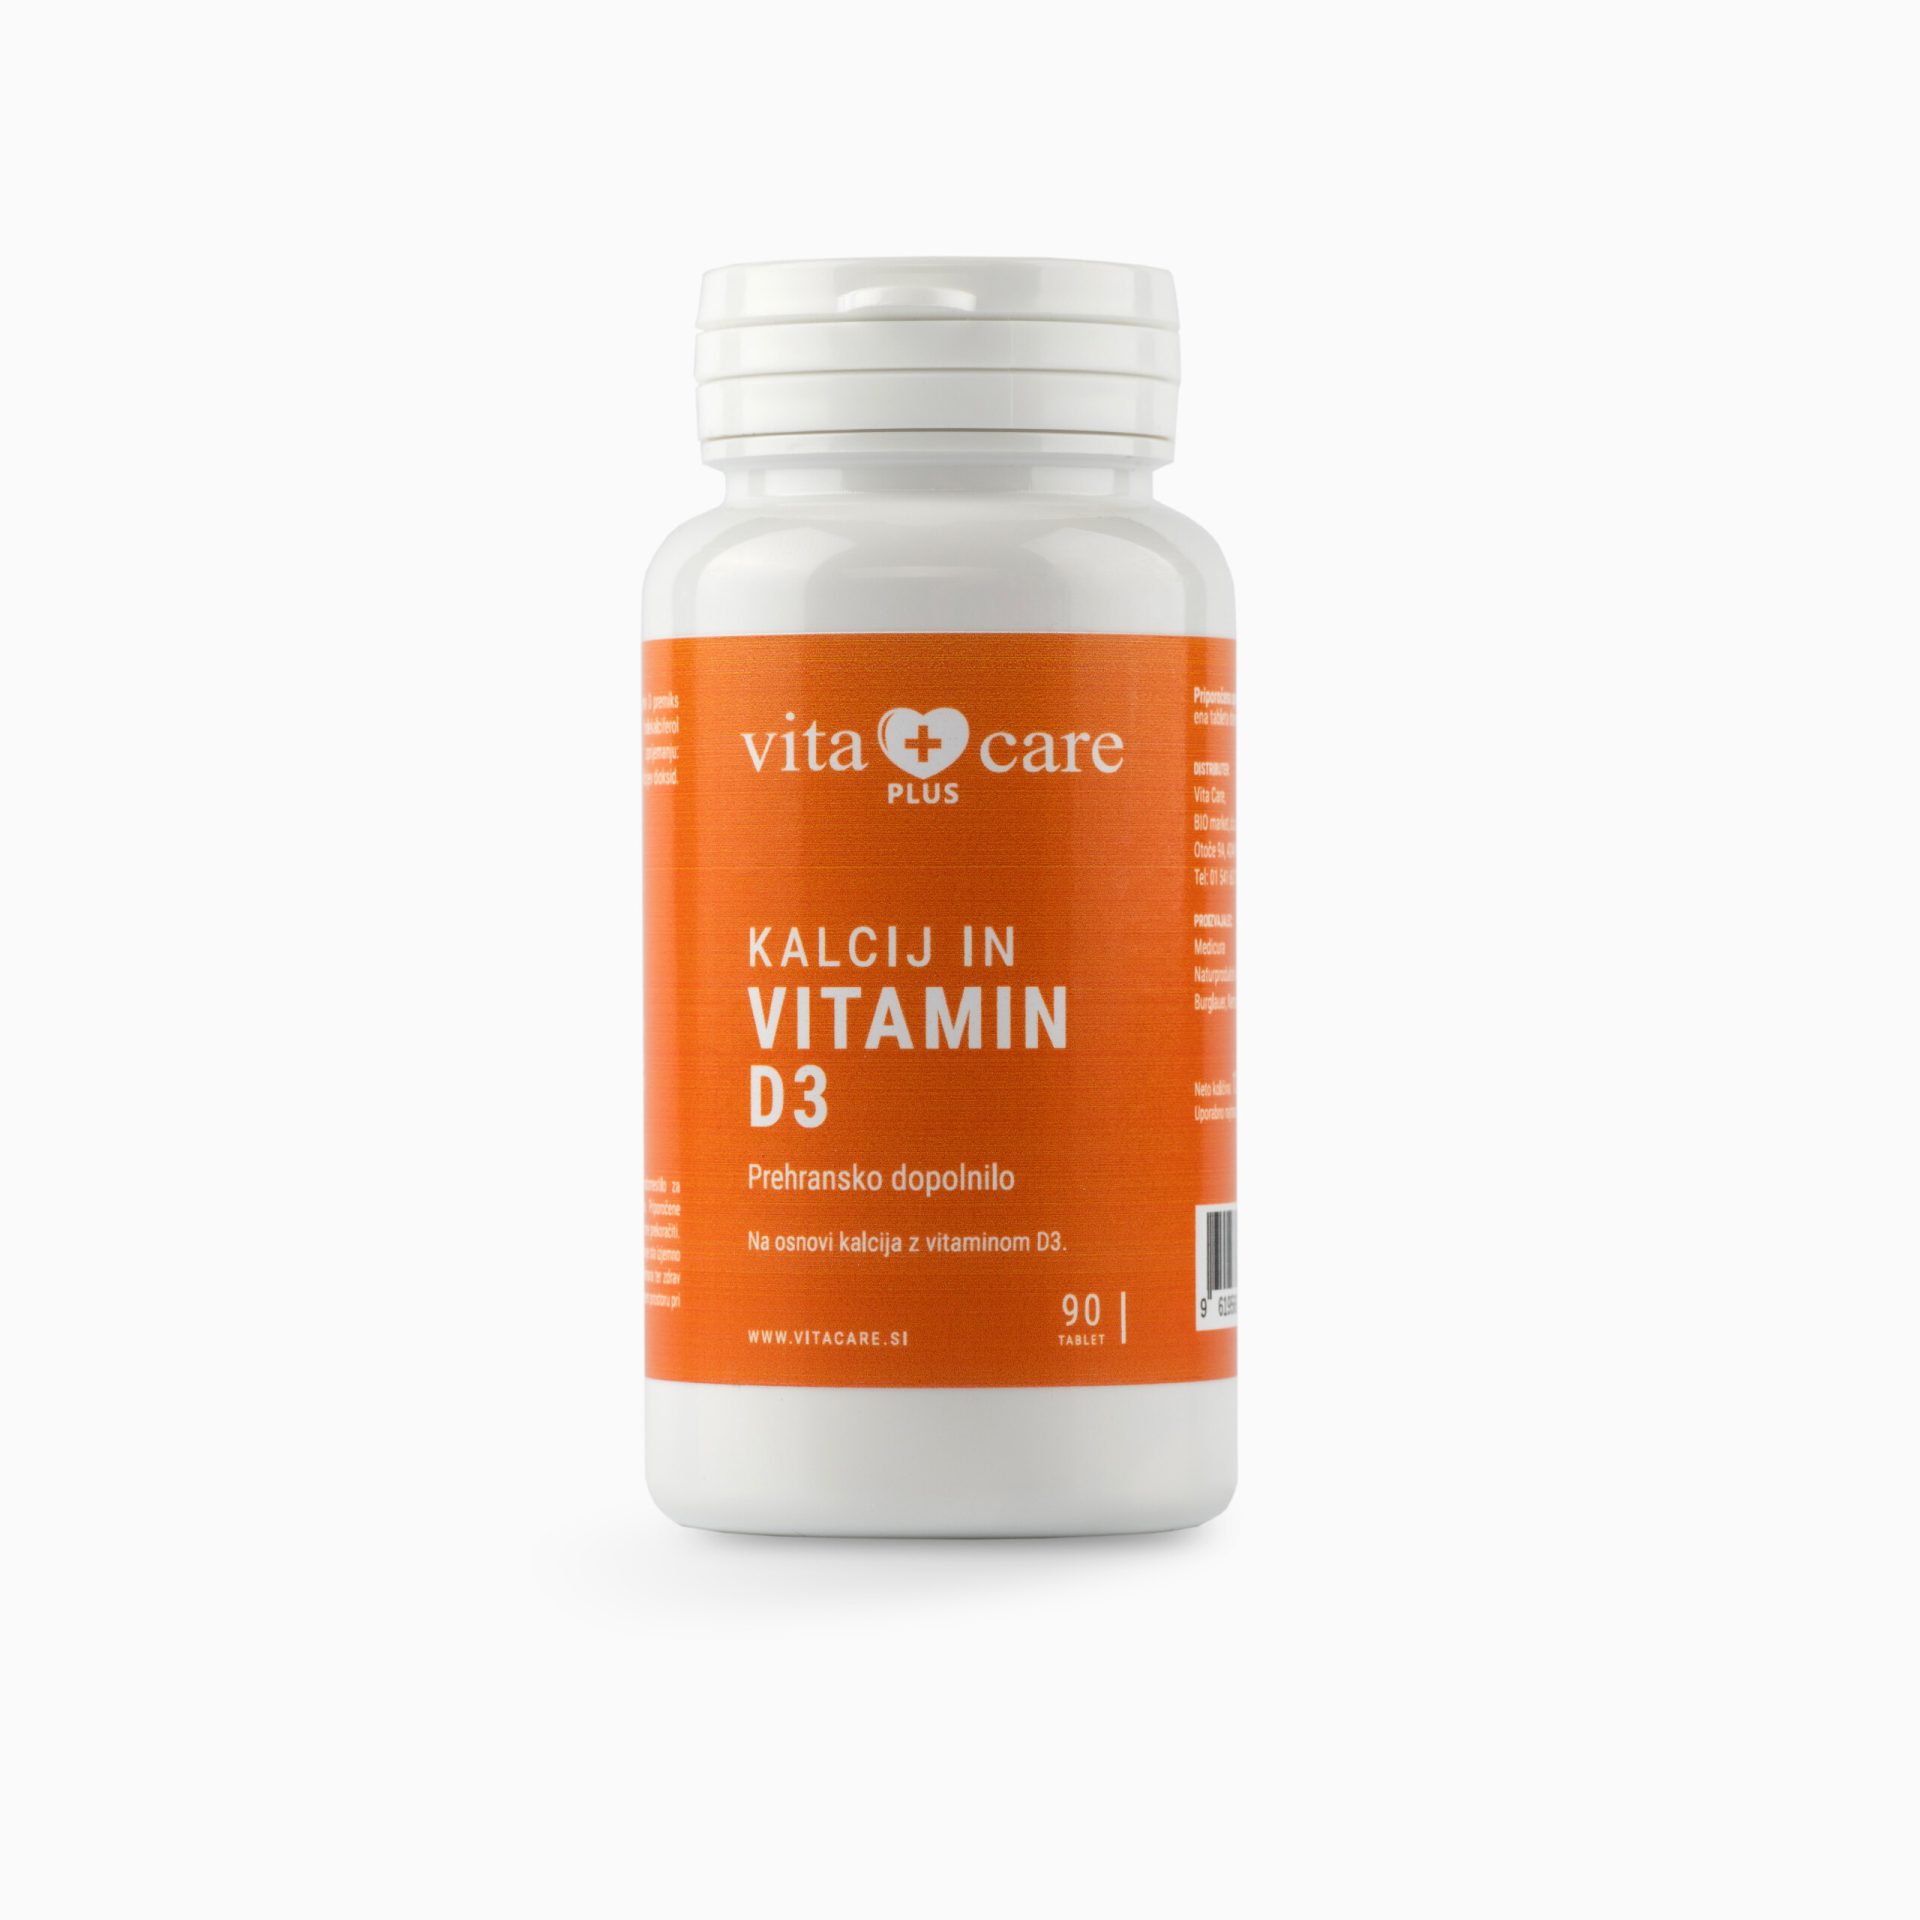 Vita Care Plus Kalcij in vitamin D3 tablete, 90 tablet